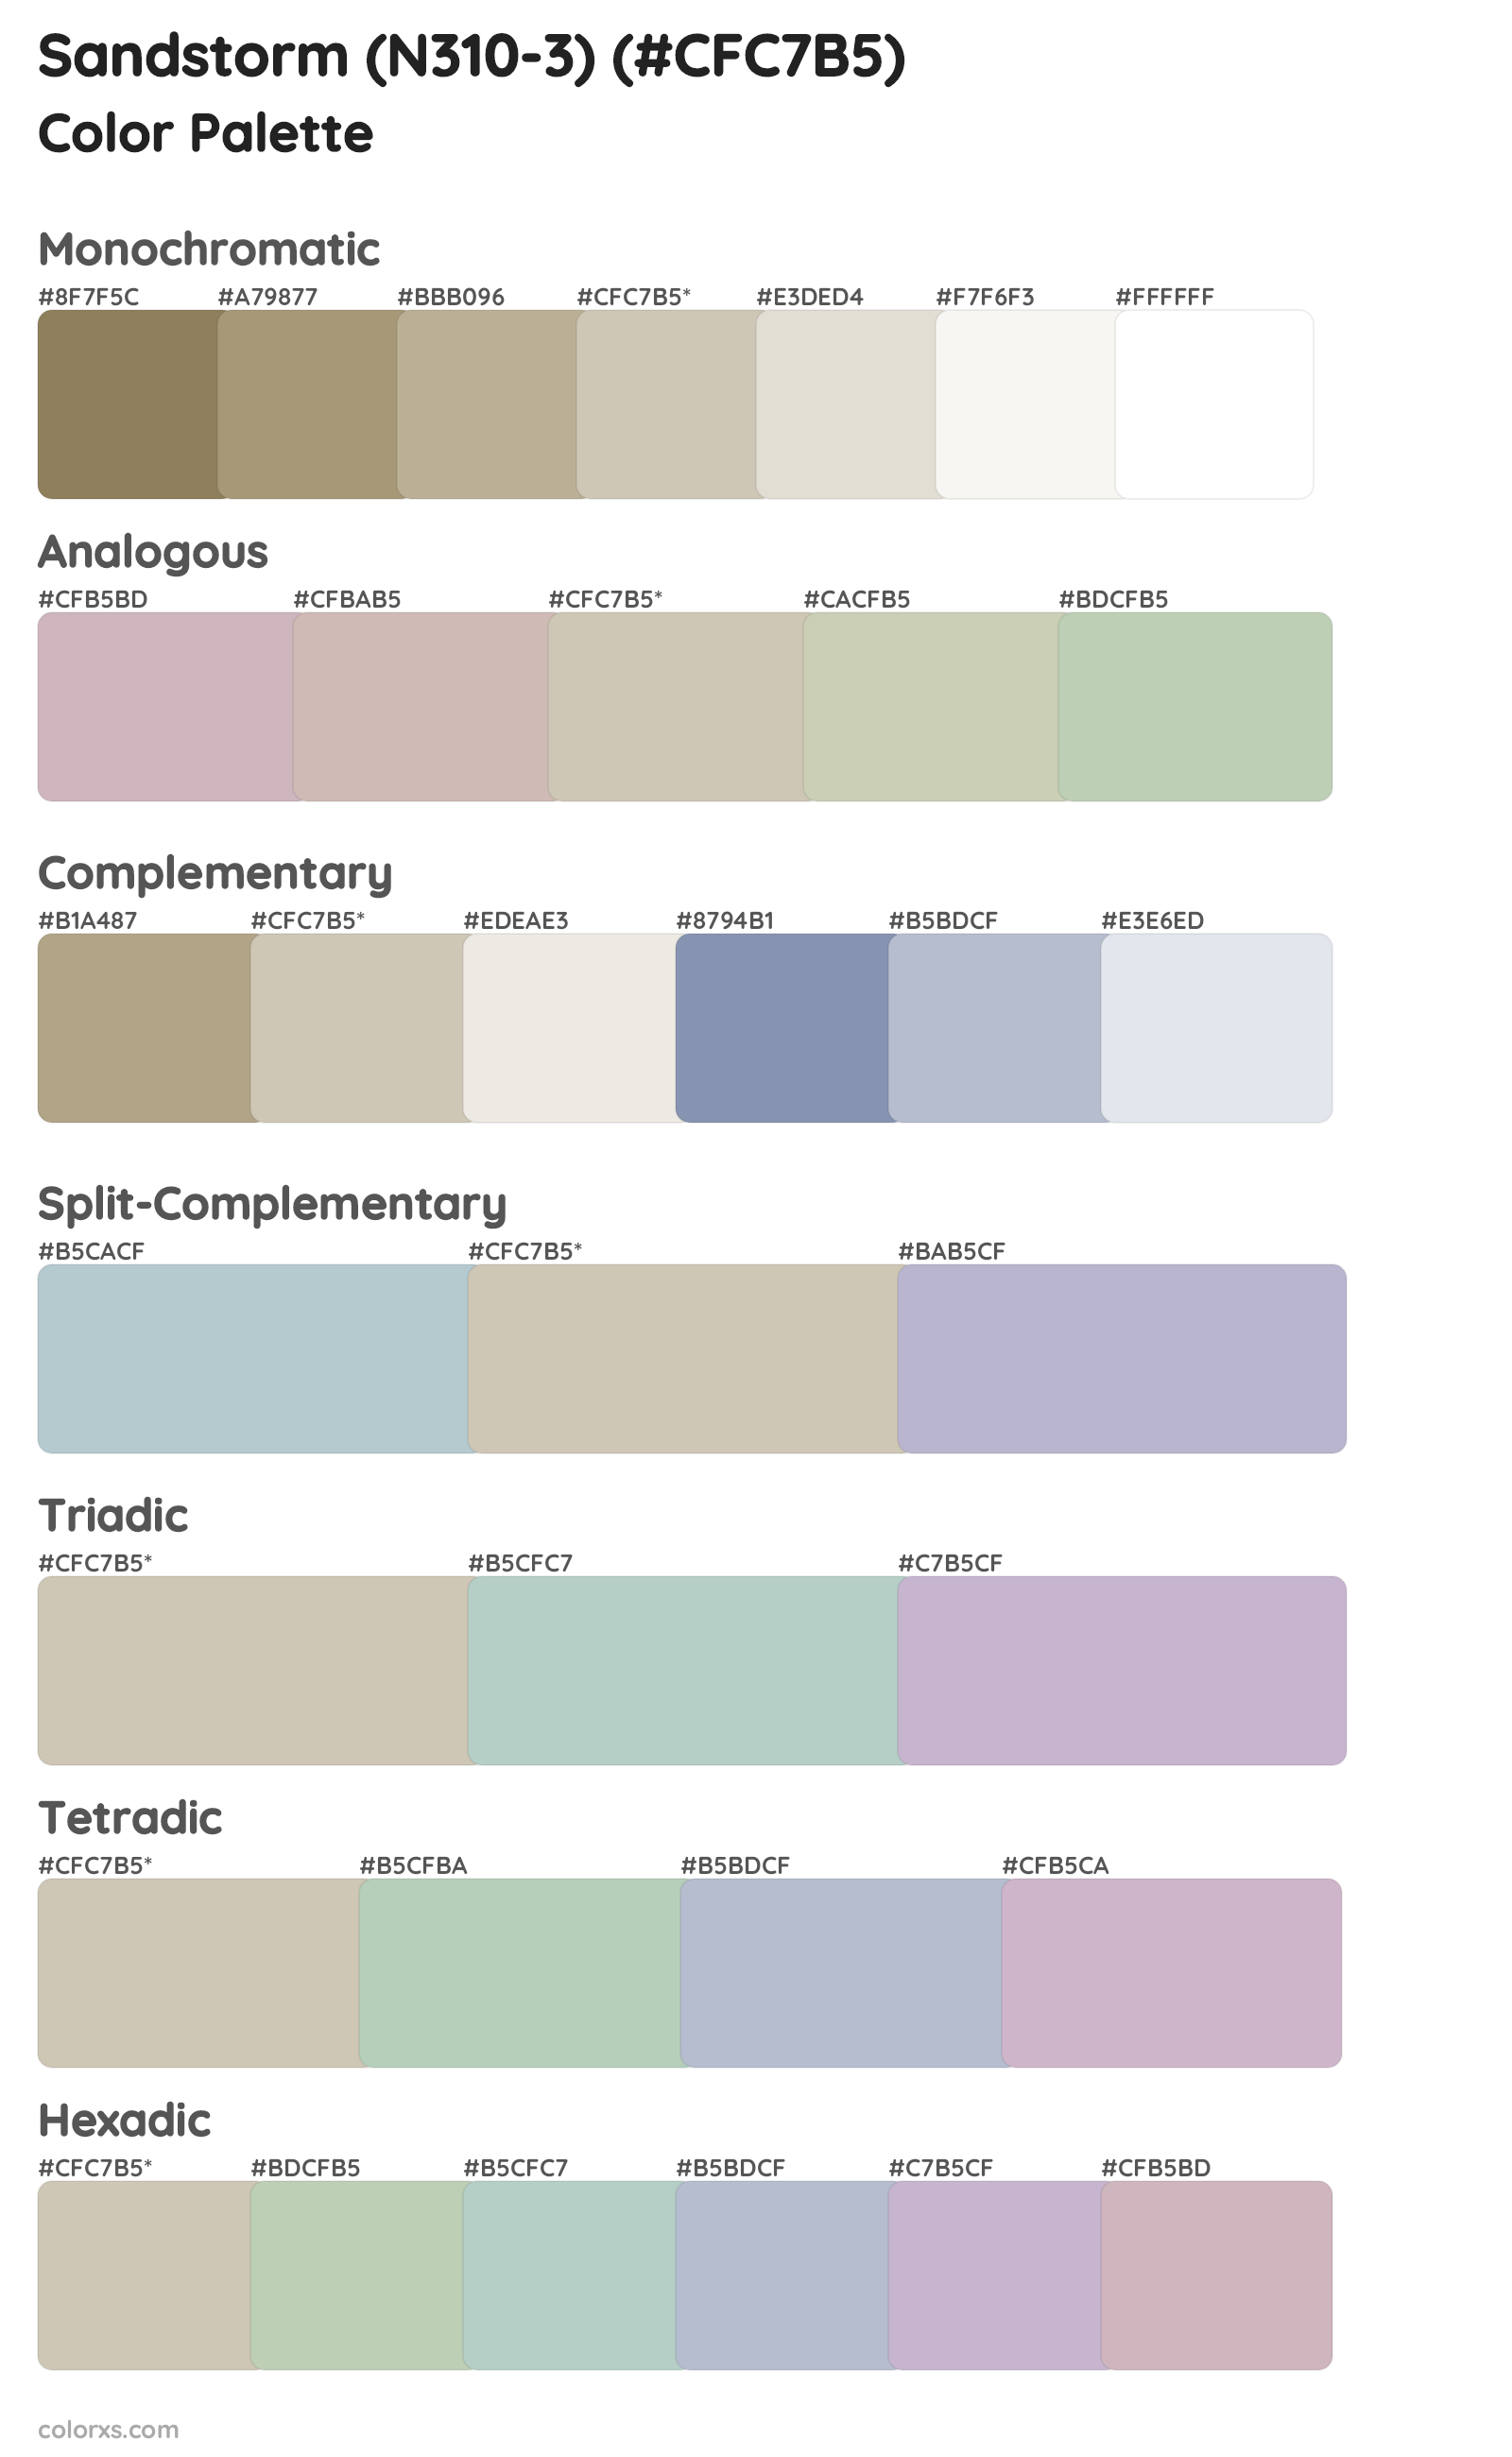 Sandstorm (N310-3) Color Scheme Palettes